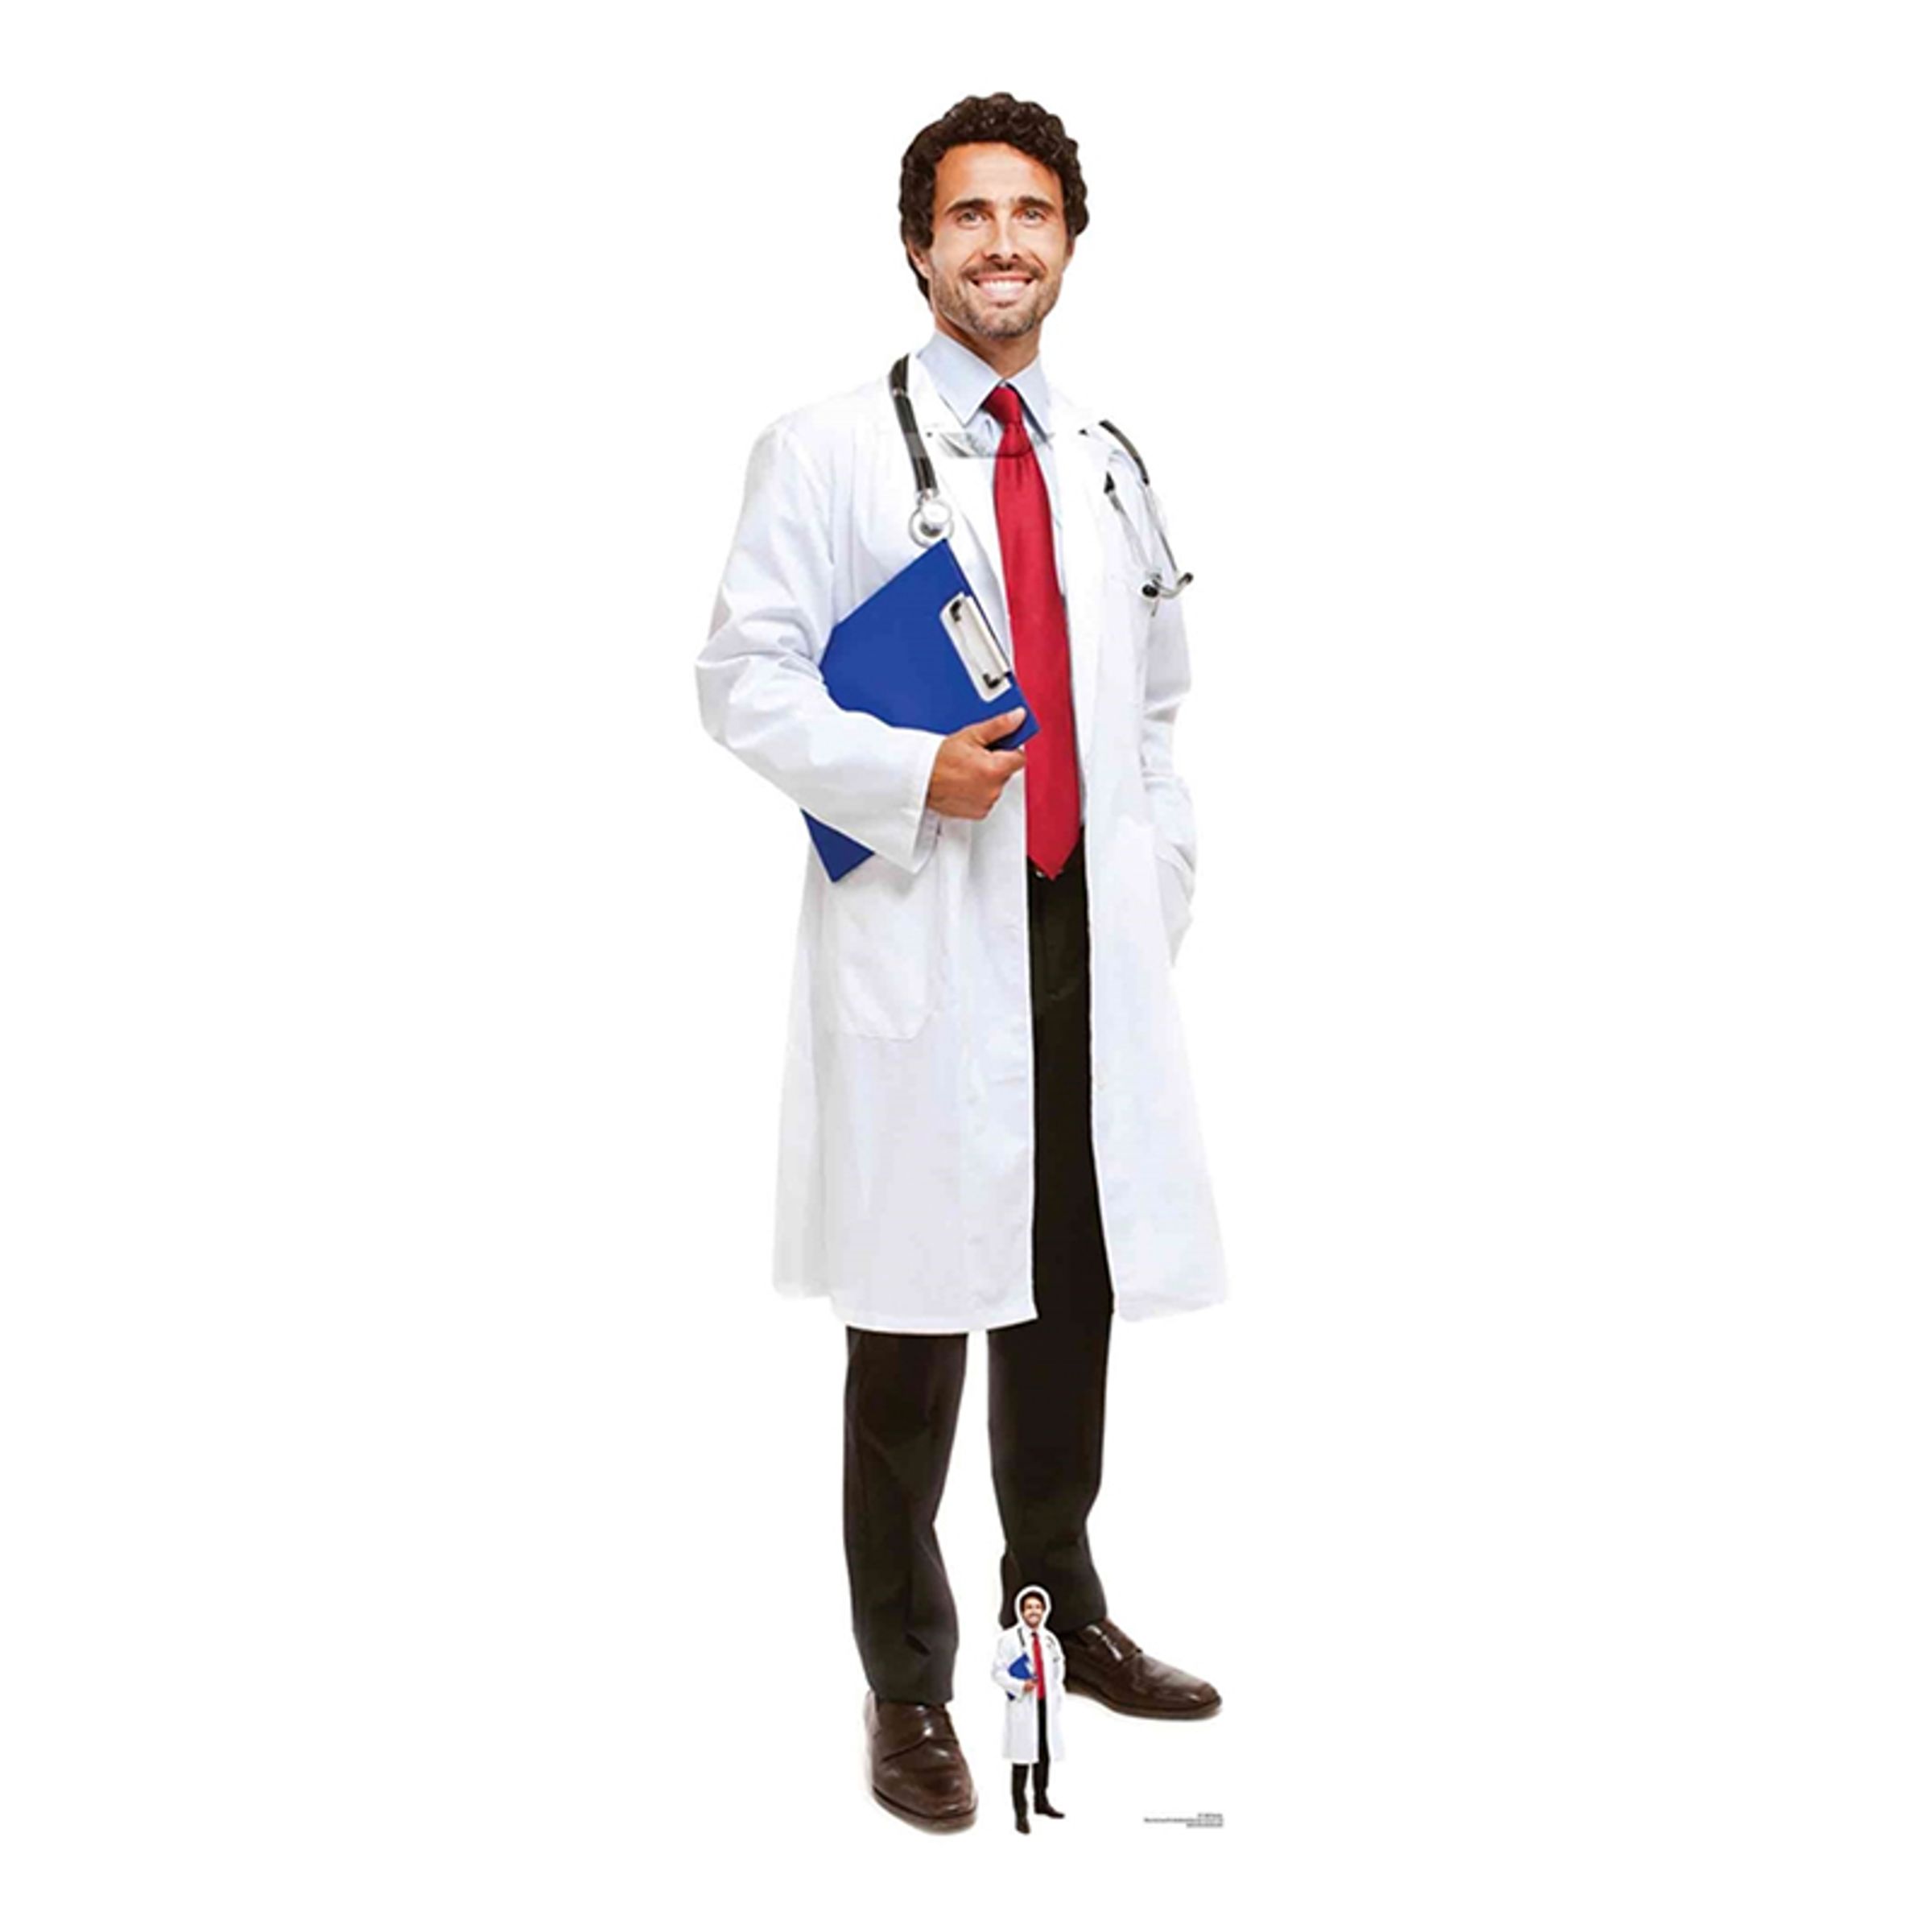 Manlig Läkare Kartongfigur